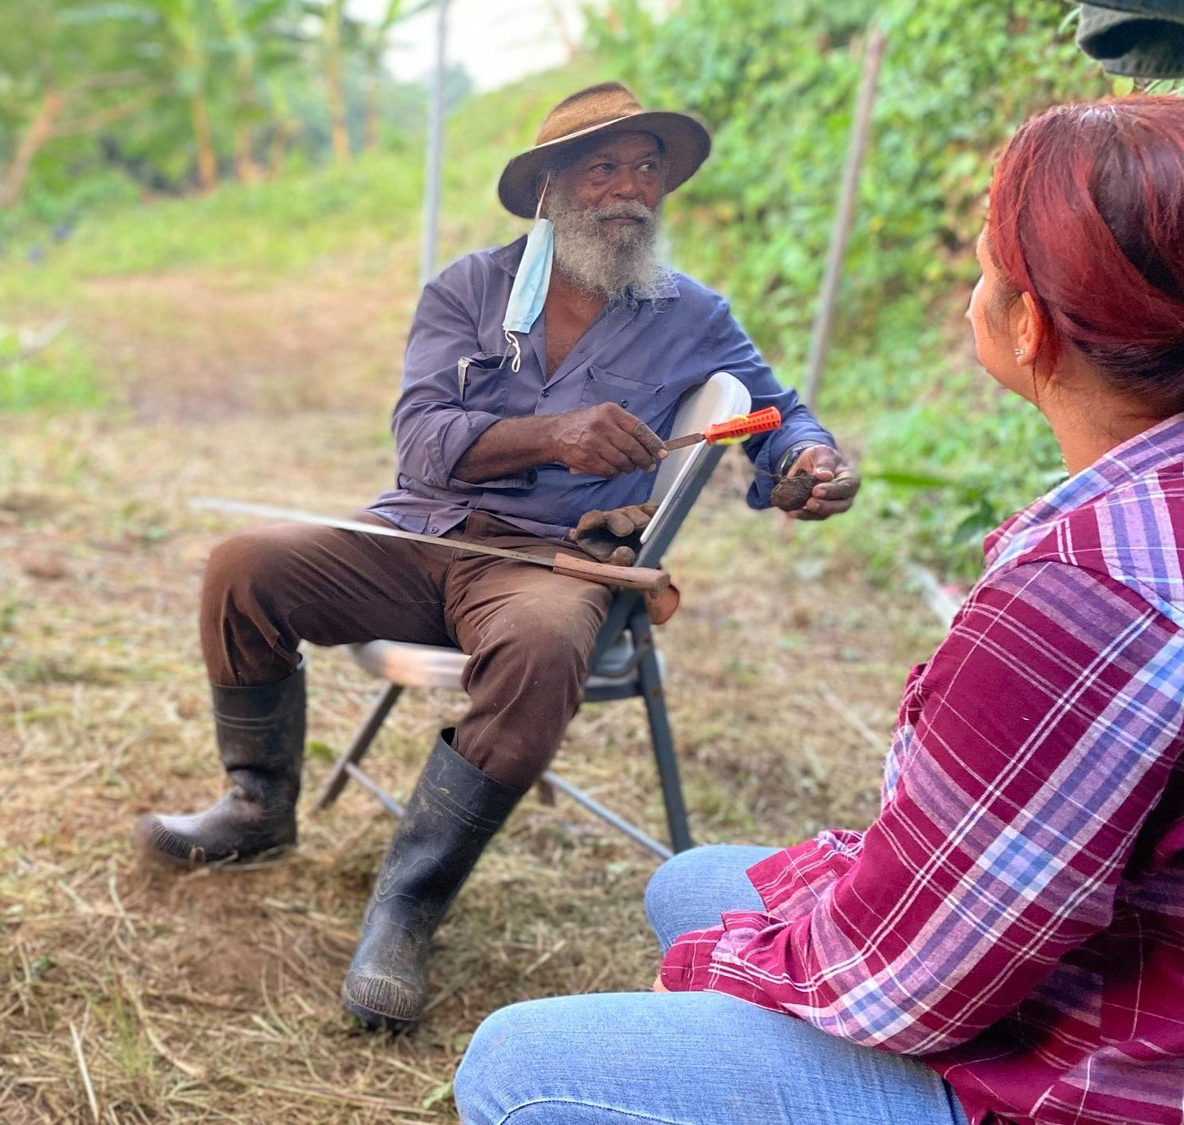 Imagen de hombre agricultor hablando con otra persona como parte del programa de Abono.